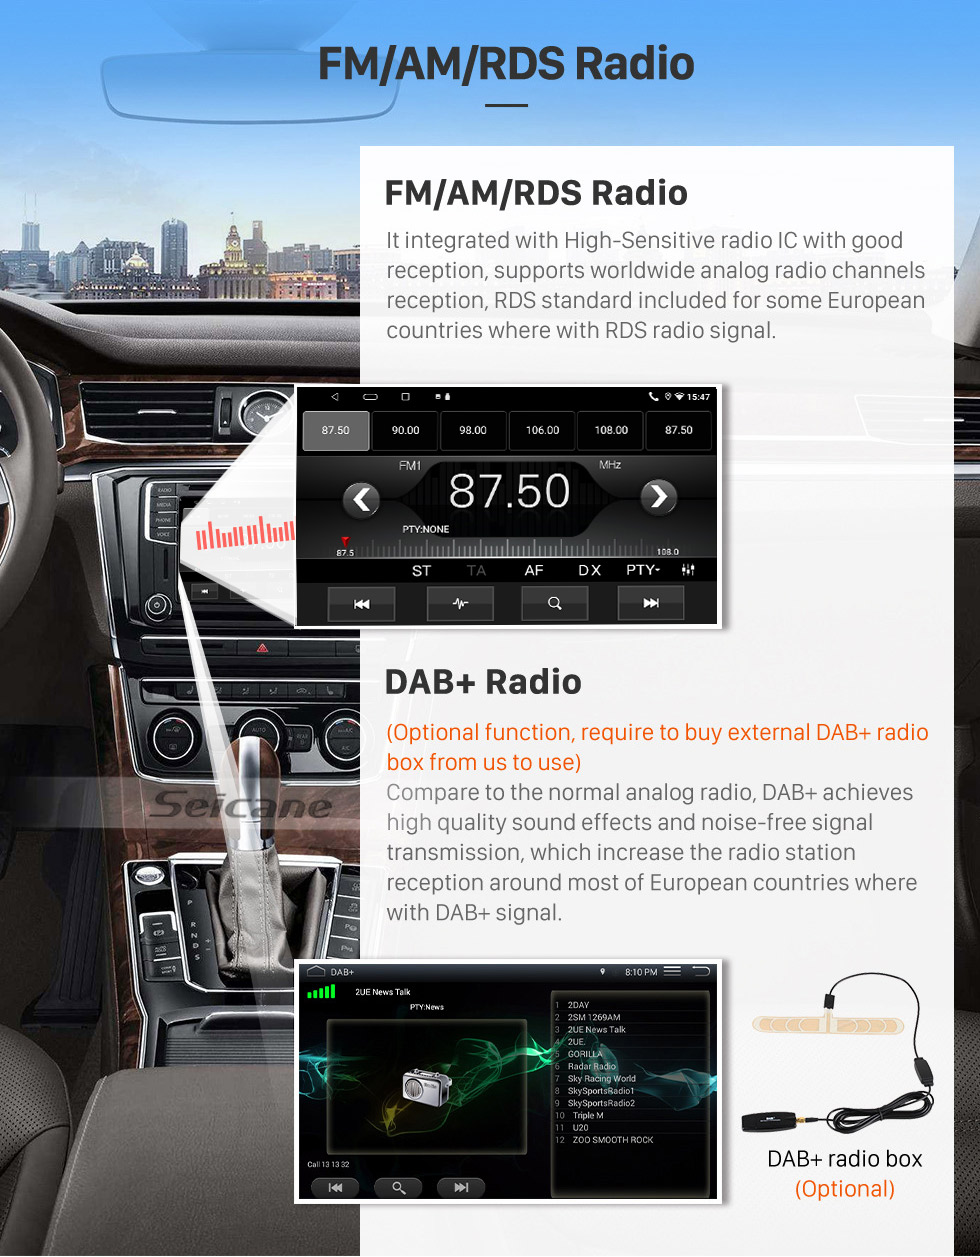 Seicane Android de 9 polegadas 10.0 para JAC Tongyue RS Hatchback 2010-2012 Sistema de navegação por rádio GPS com tela sensível ao toque HD com suporte para Bluetooth Carplay OBD2